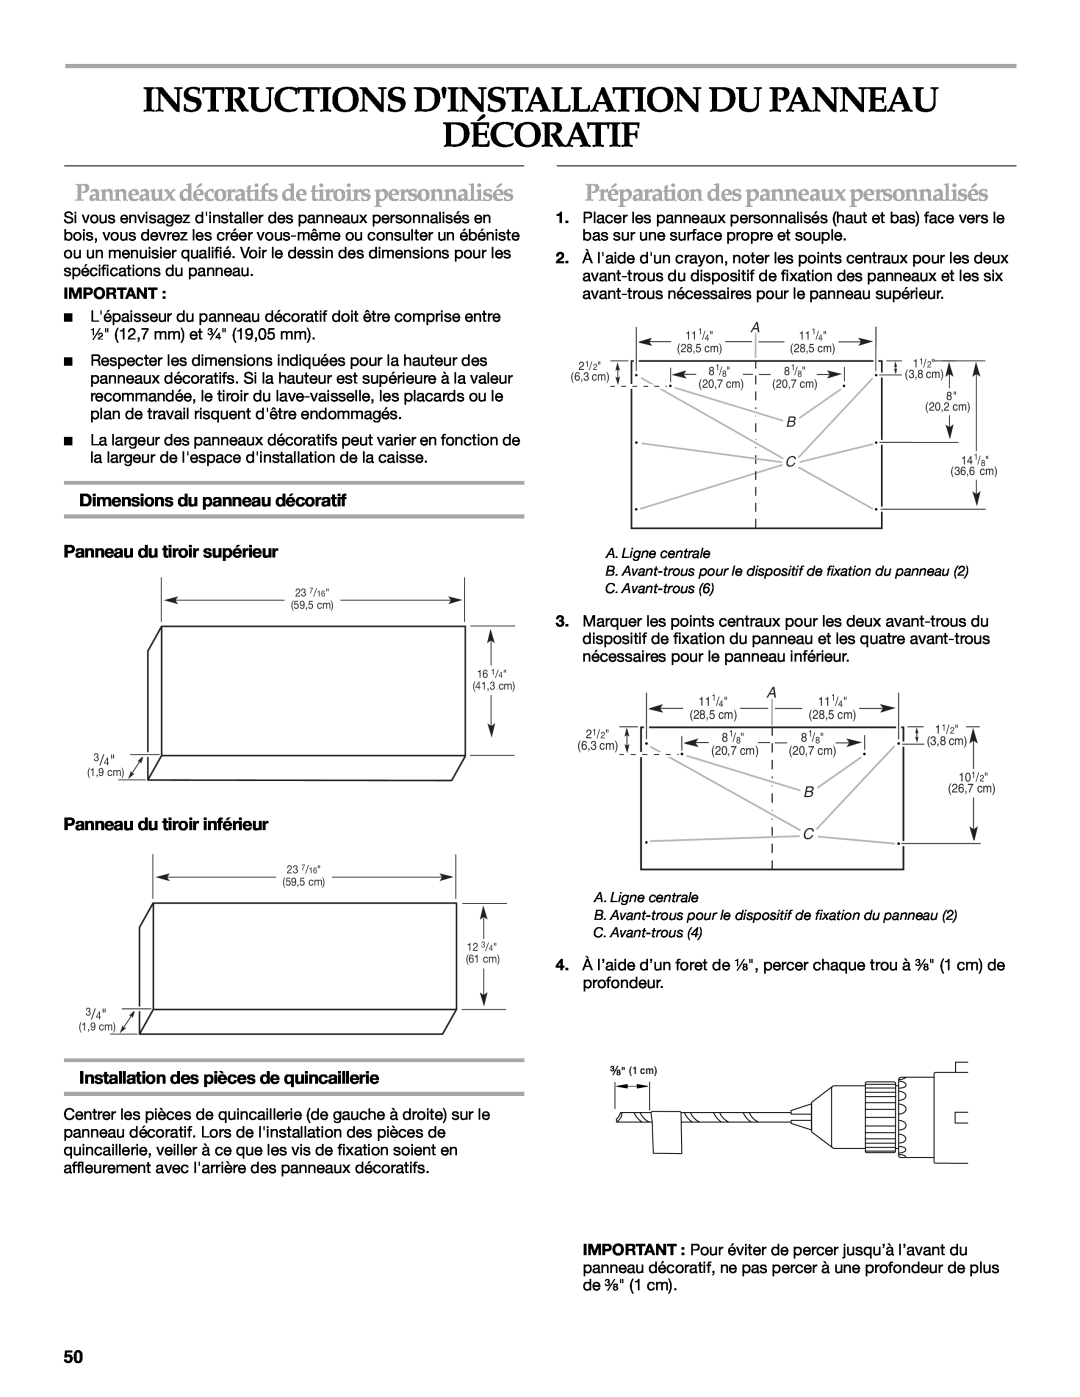 KitchenAid W10118037B Instructions Dinstallation Du Panneau Décoratif, Panneaux décoratifs de tiroirs personnalisés 